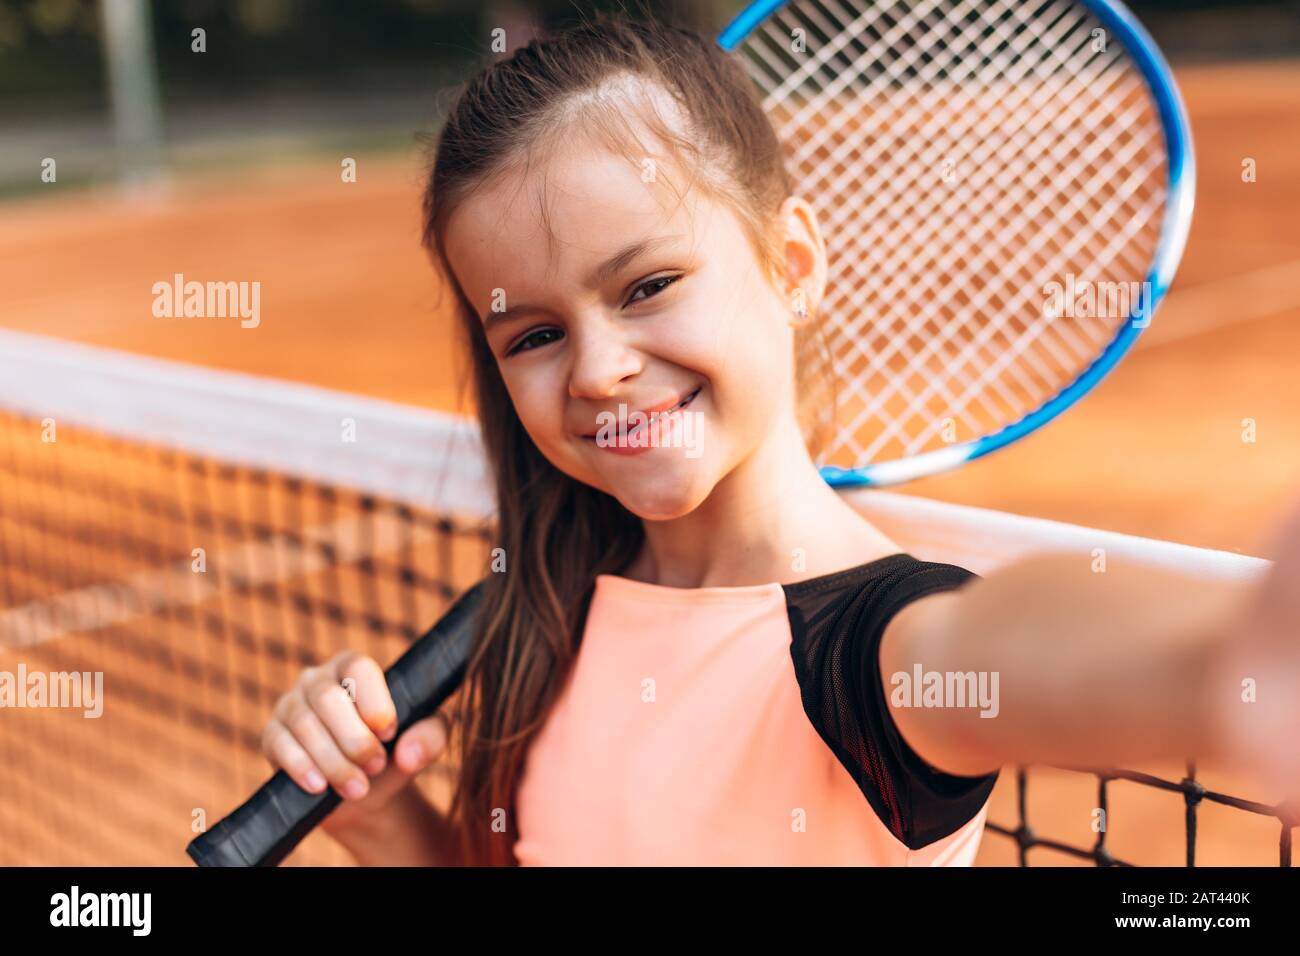 "ute, hübsches Mädchen, das ein selfie mit einem Schläger auf einem Tennisplatz nimmt. Stockfoto